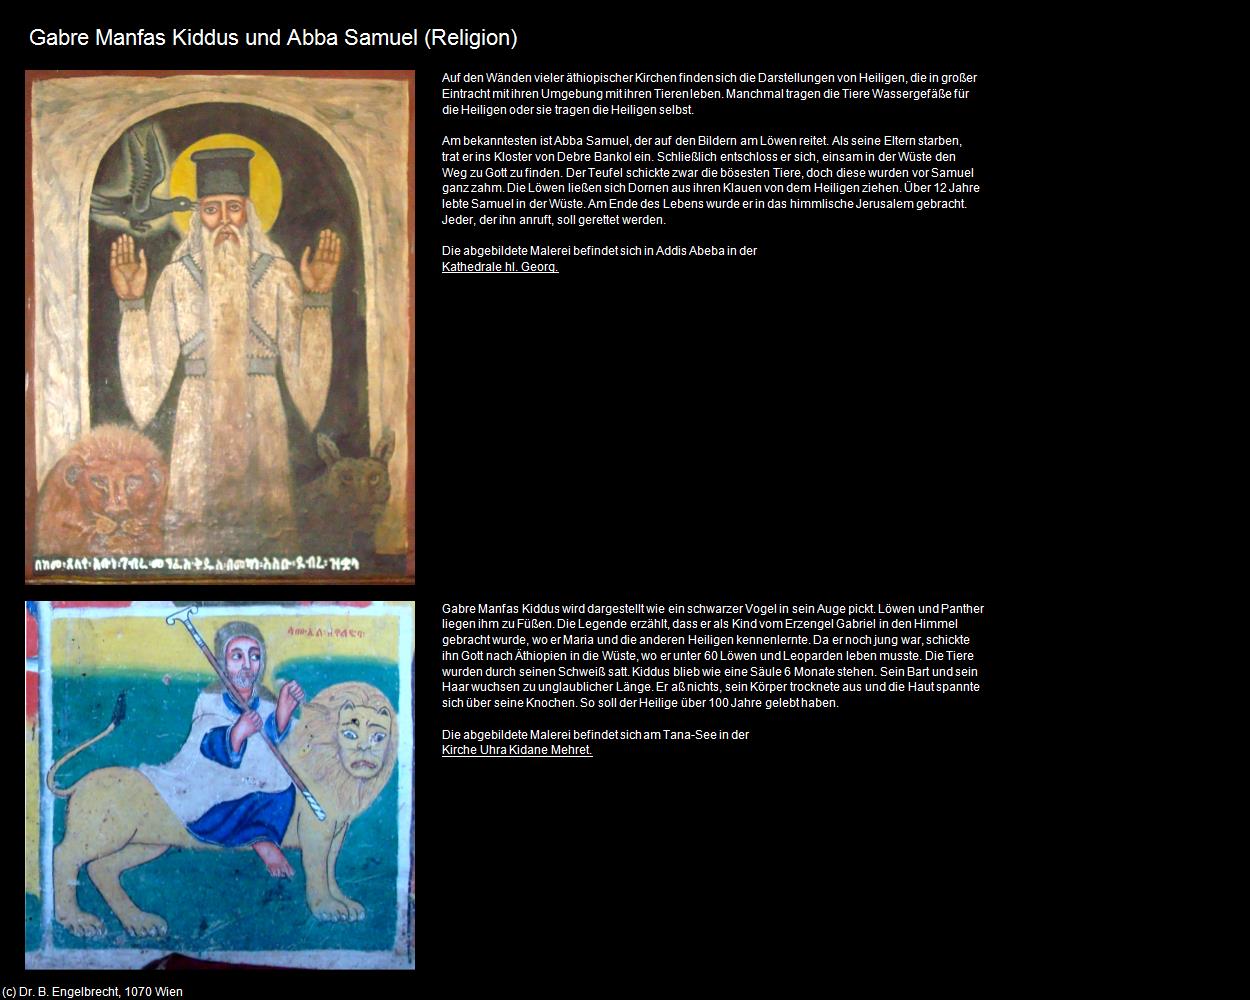 Gabre Manfas Kiddus und Abba Samuel (+Religion) in Äthiopien(c)B.Engelbrecht